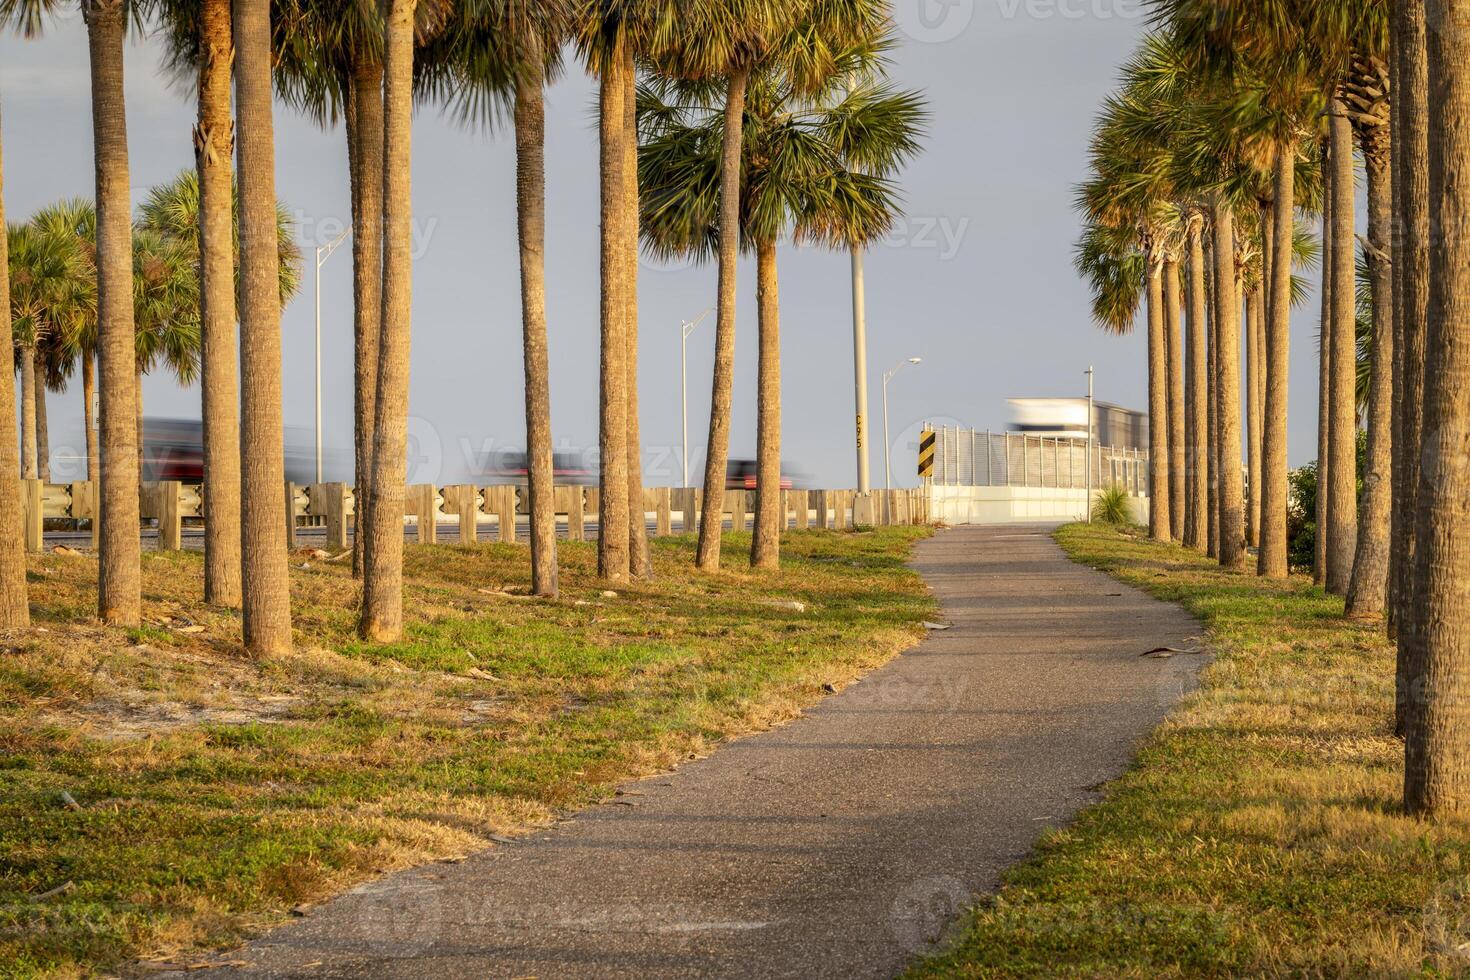 wandelen spoor tussen palm bomen langs zonneschijn skyway snelweg aan de overkant tampa baai, Florida foto